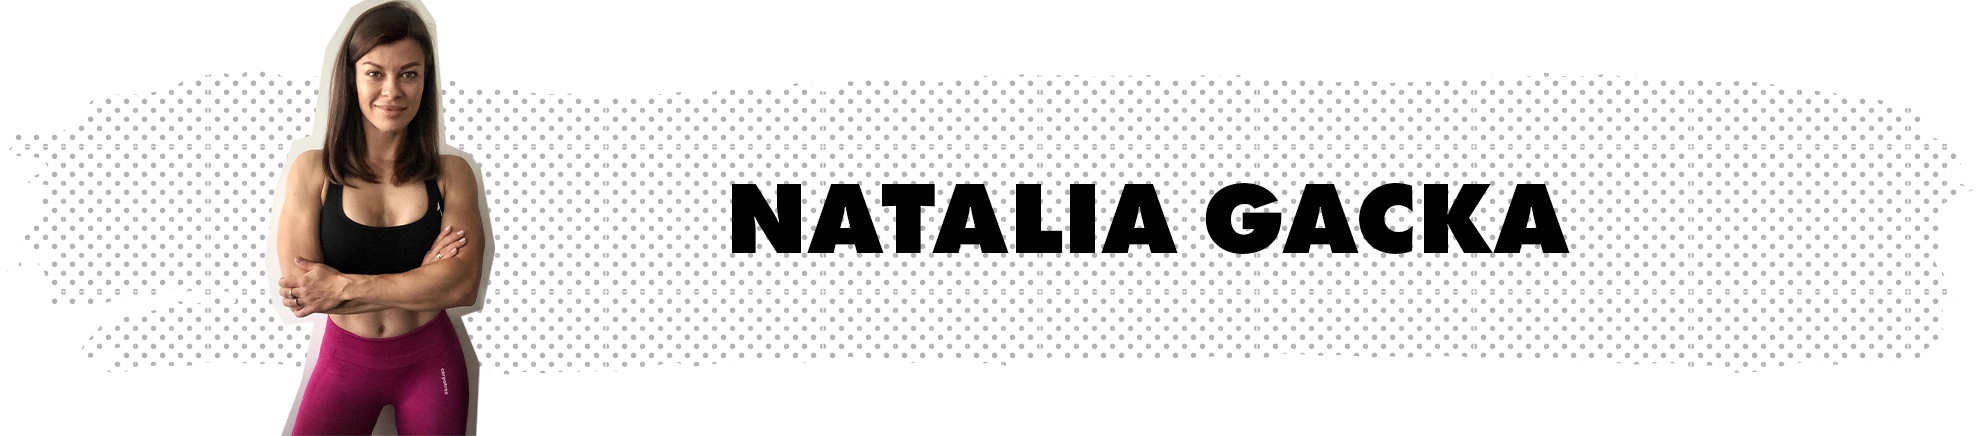 Natalia Gacka - Carpatree brand ambassador